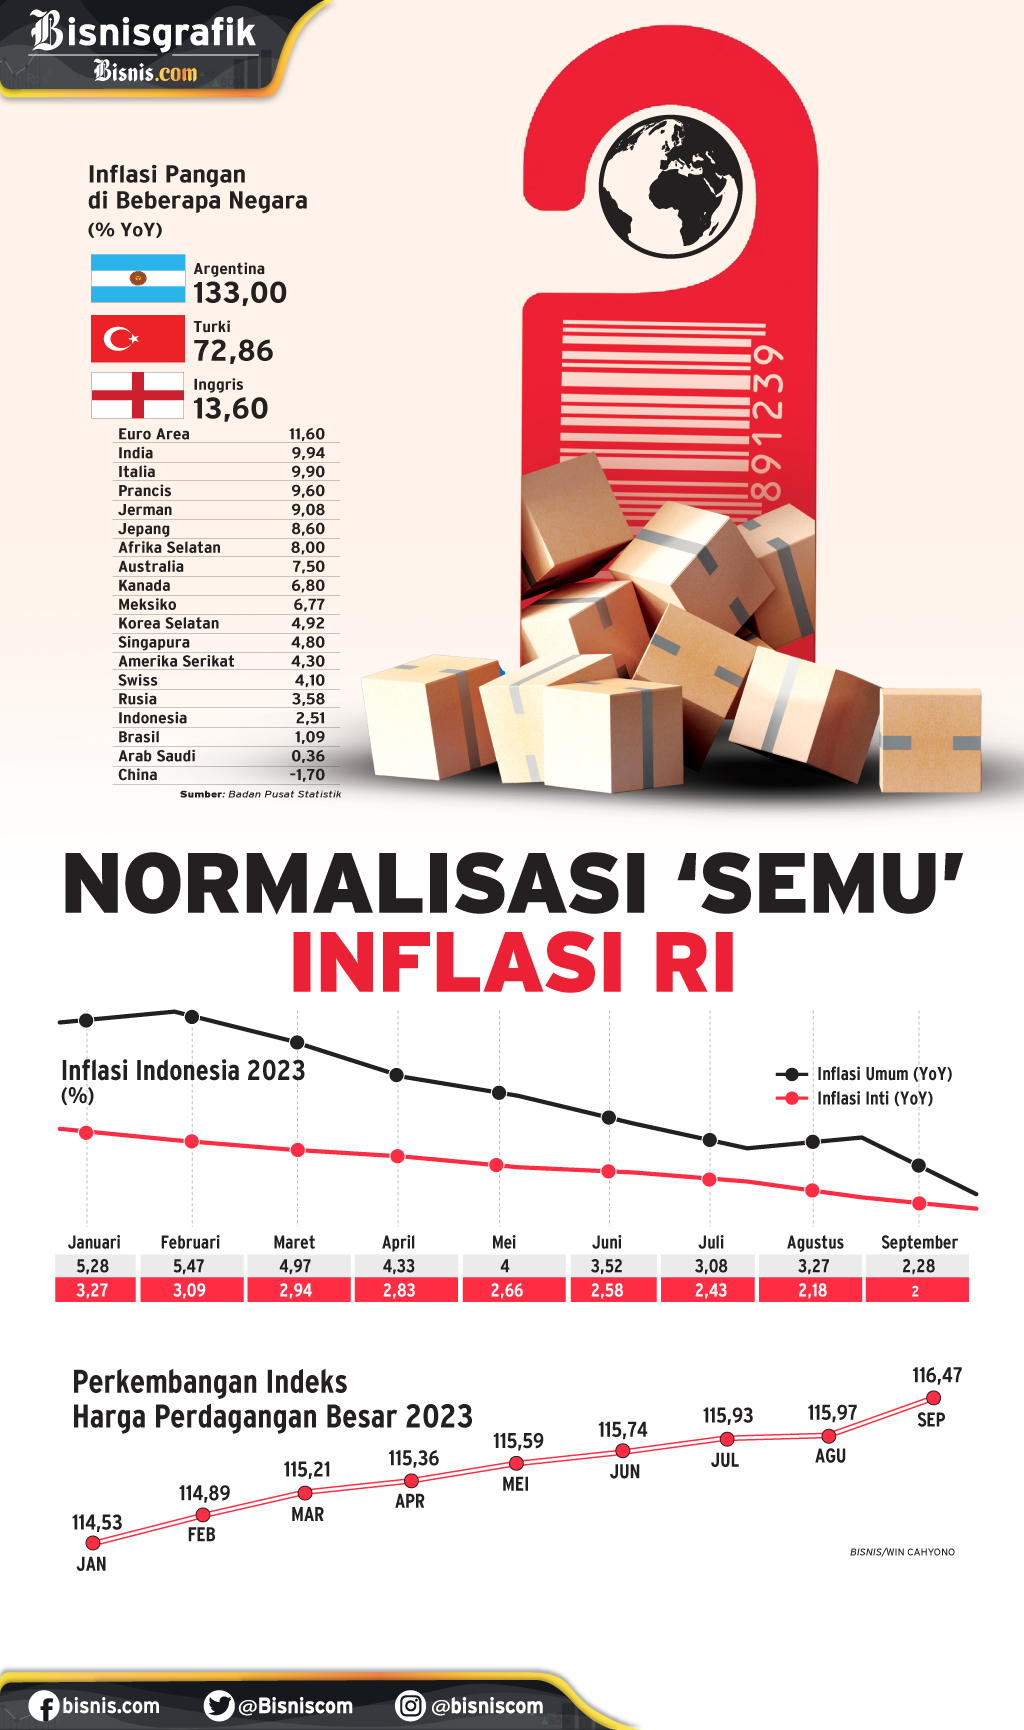 INDEKS HARGA KONSUMEN : Normalisasi 'Semu' Inflasi RI